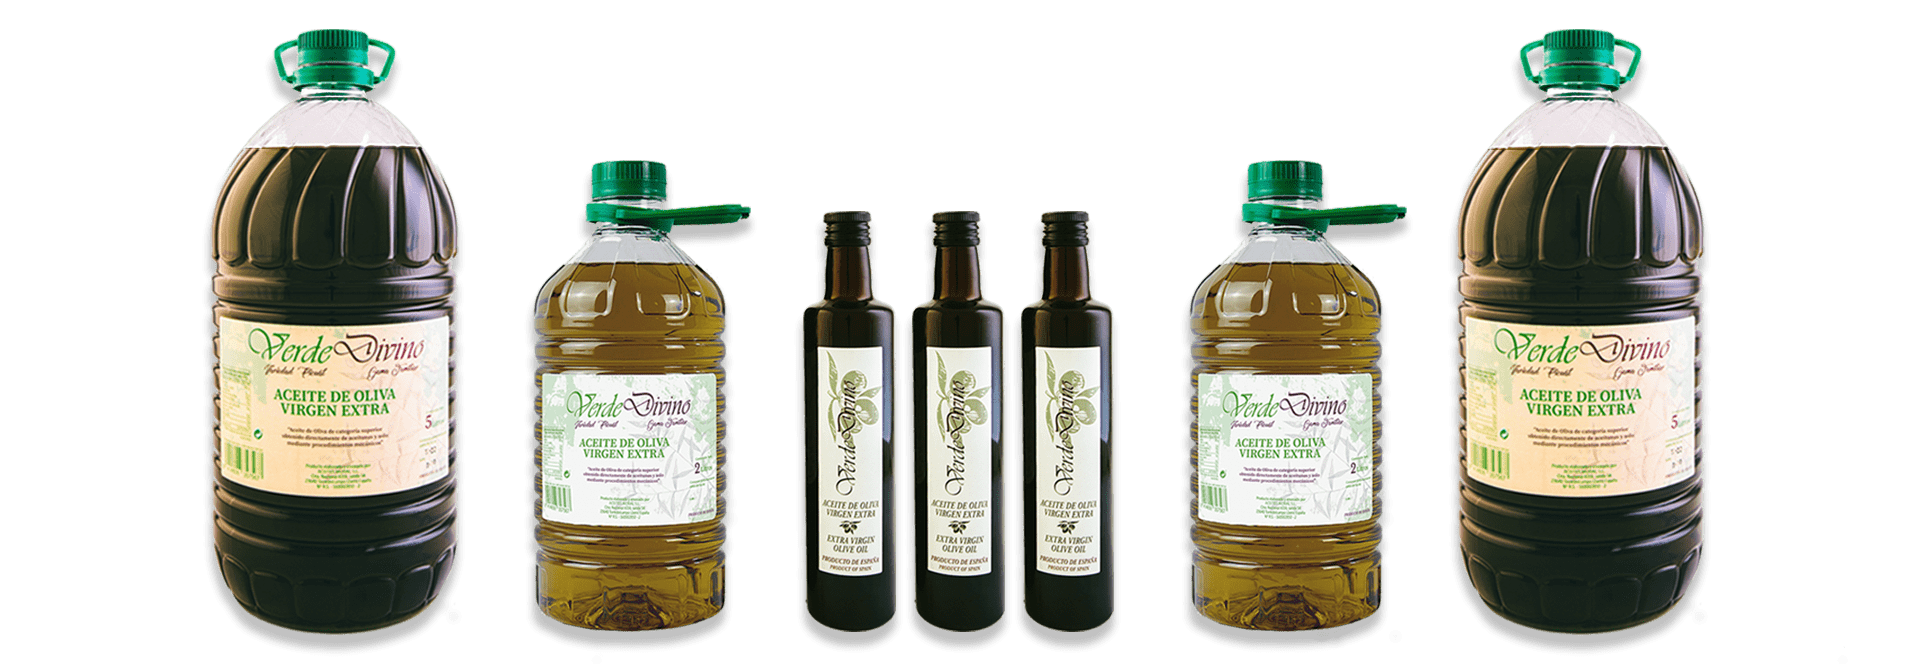 Natives Olivenöl Extra Verde Divino in Karaffen